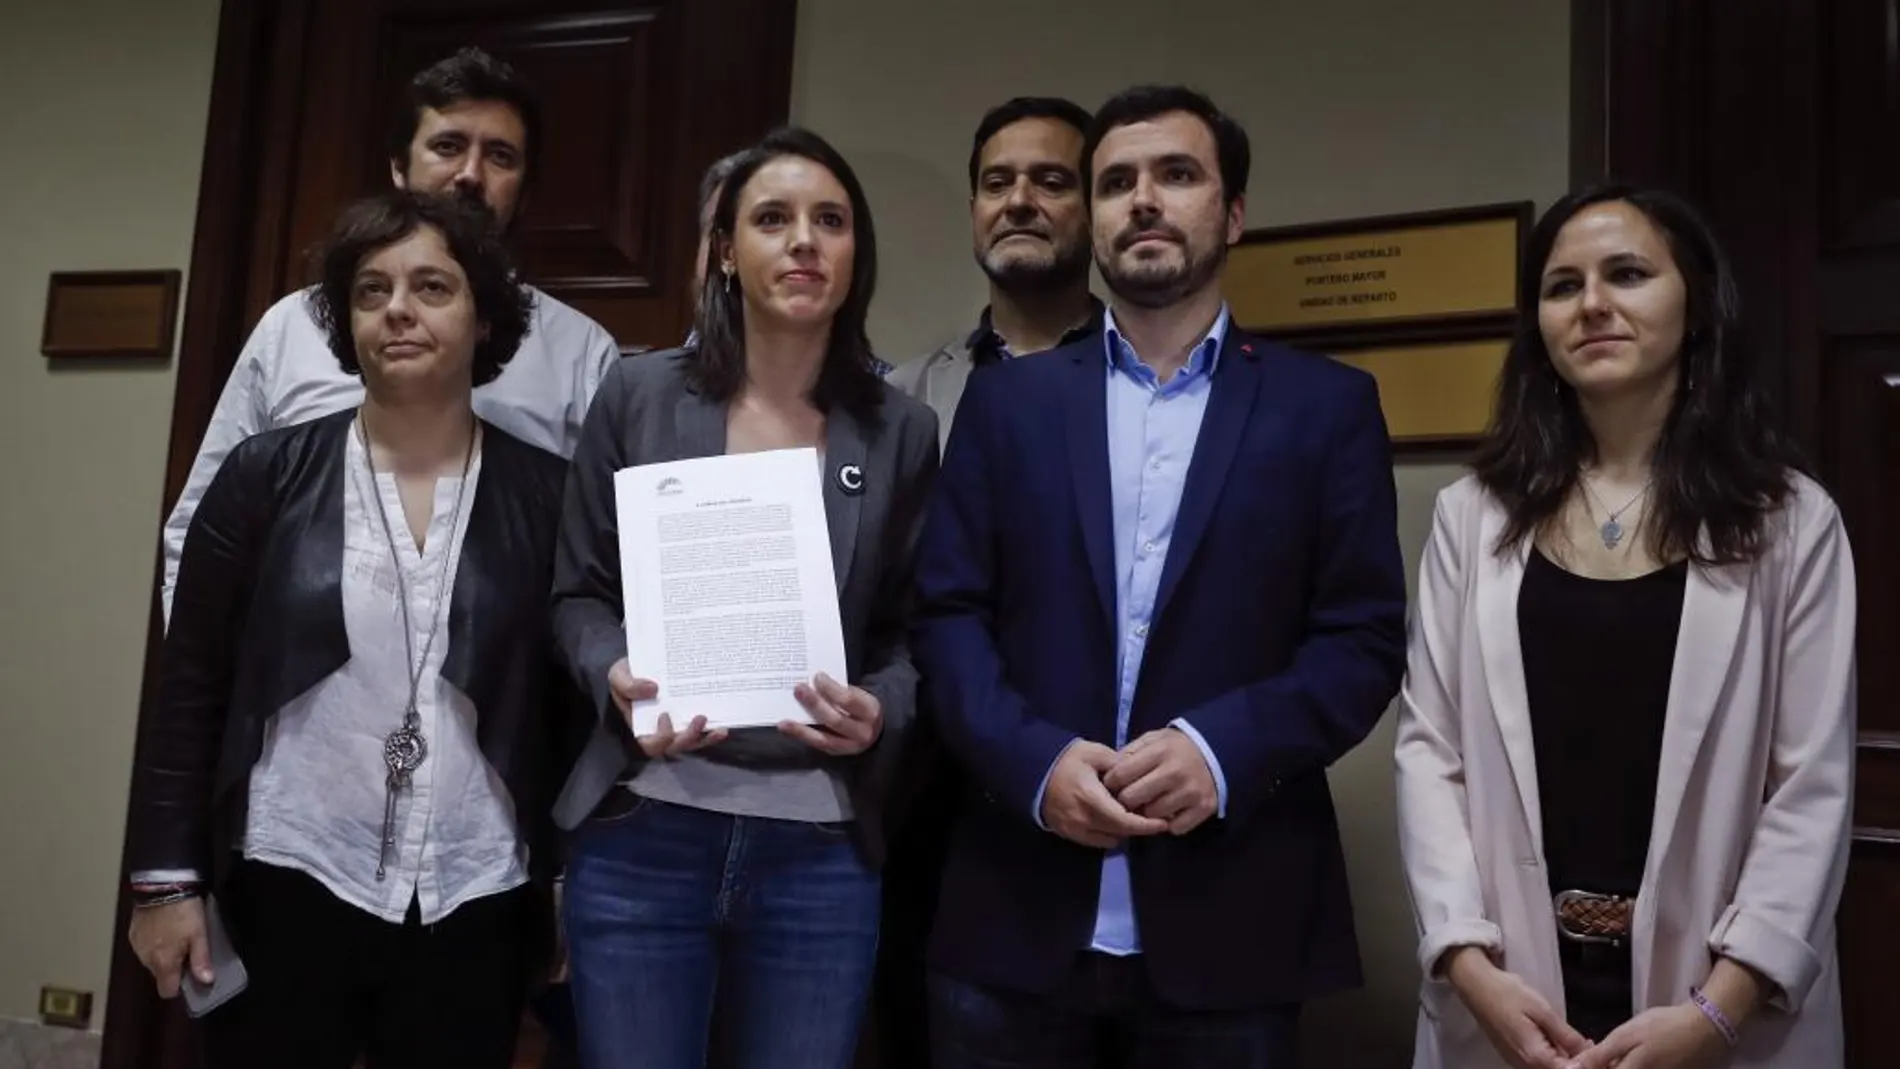 La portavoz de Unidos Podemos en el Congreso, Irene Montero (3i) junto al coordinador federal de IU, Alberto Garzón (2d), momentos antes de presentar en el registro del Congreso de los Diputados, la anunciada moción de censura